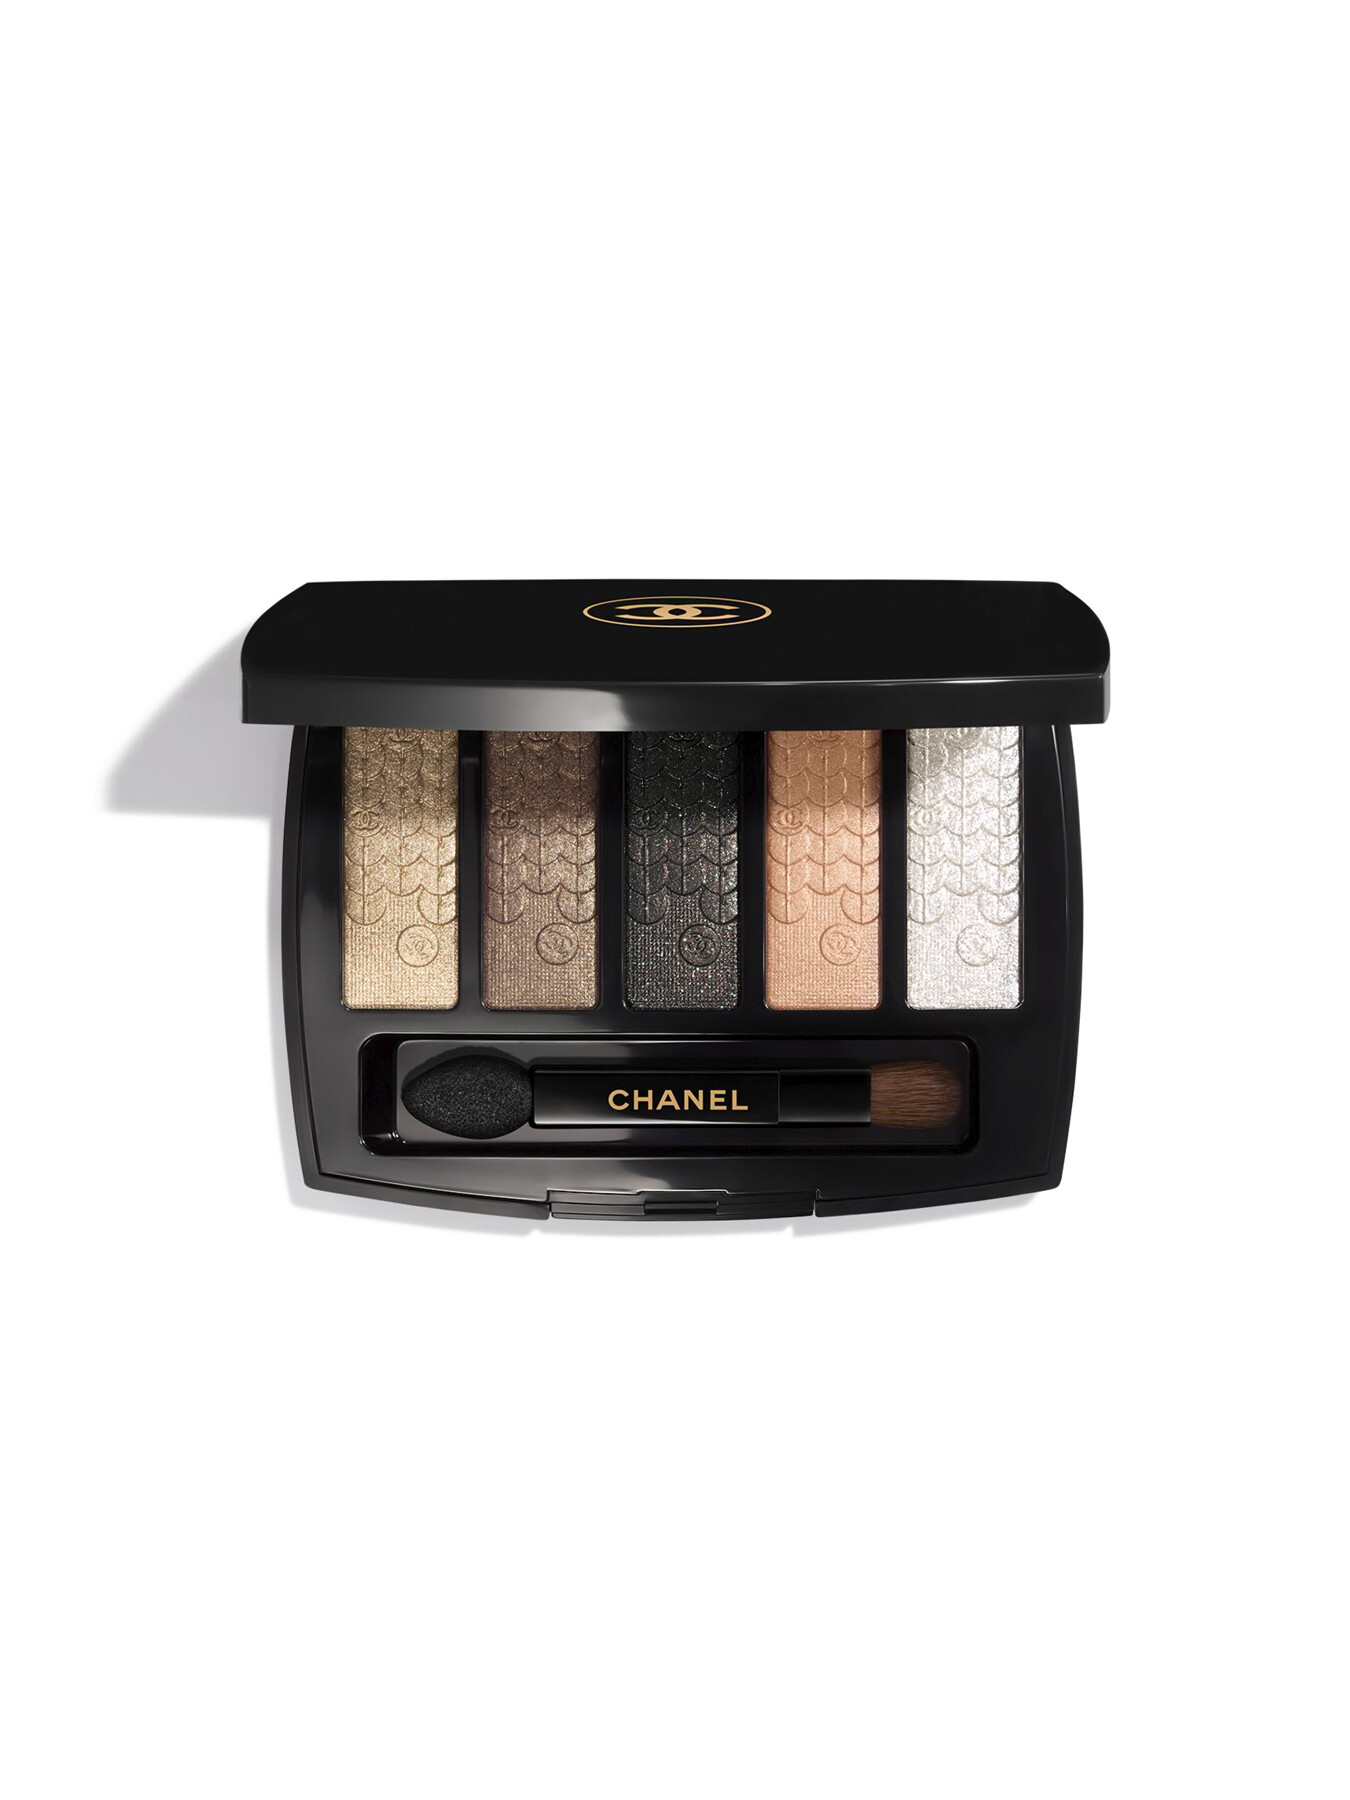 Chanel Les Indispensables De Chanel (brush/1pc*4) - Makeup Brush